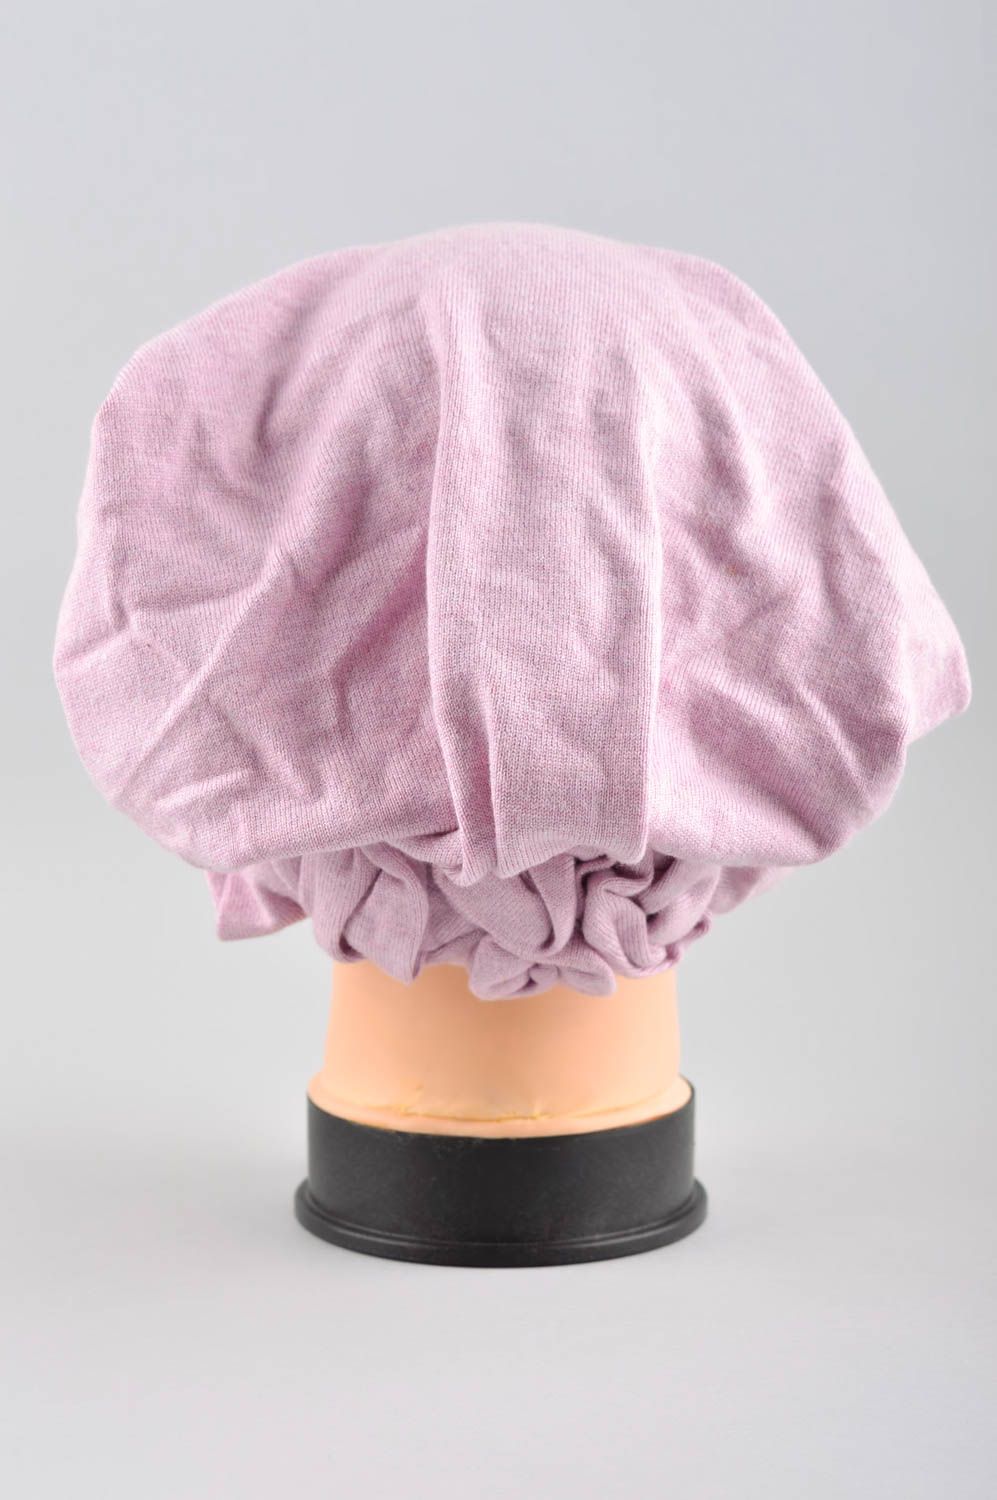 Зимняя женская шапка ручной работы зимняя шапка розовая головной убор красивый фото 3